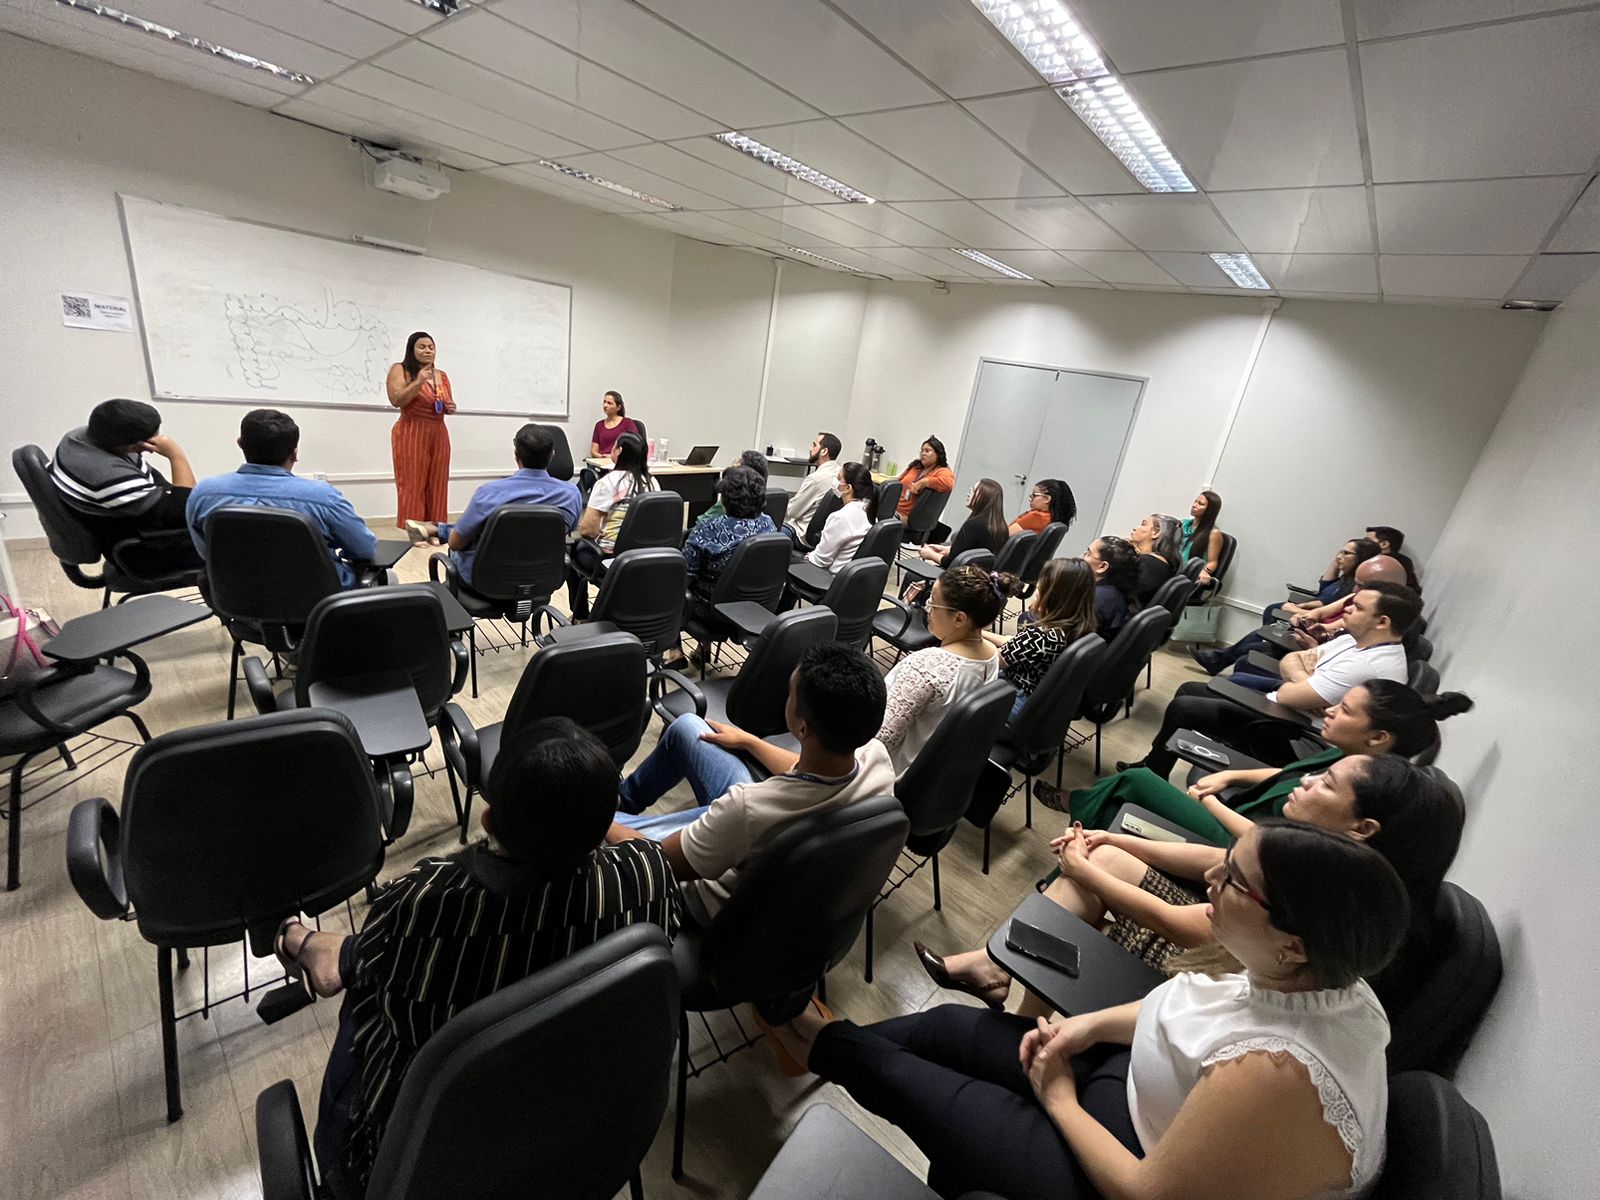  Imagem colorida  mostra a psicóloga do SQV/TJRR, Perla Lima e a Secretária do SQV/TJRR, Ivy Amaro palestrando em pé, para um grupo de pessoas sentadas em cadeiras de frente para ela, em uma sala.